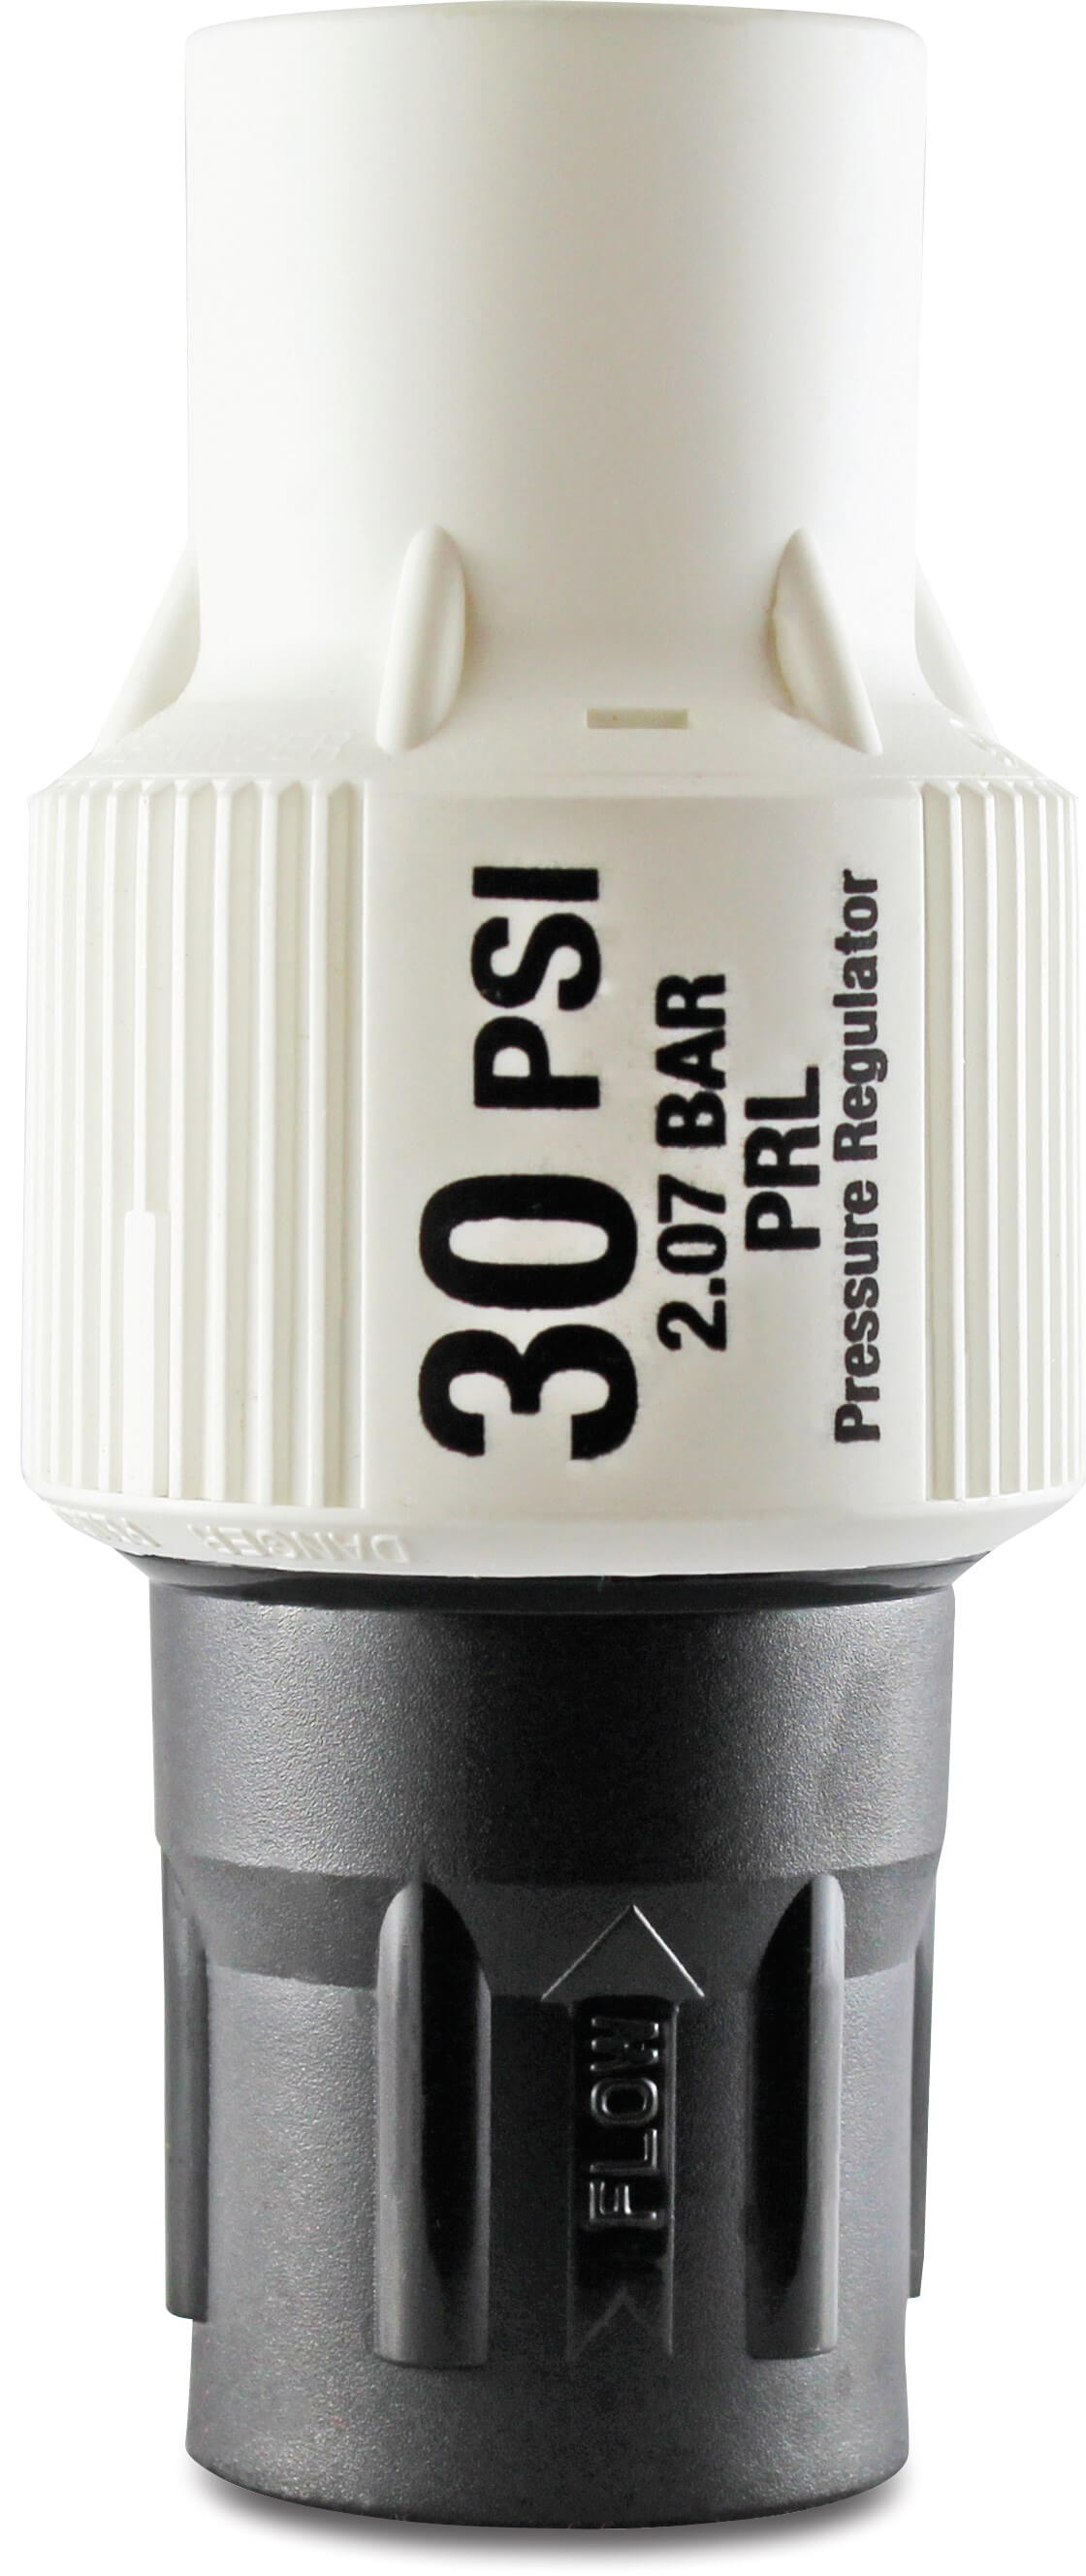 Senninger Pressure regulator plastic 3/4" female thread black/white type PRL-30